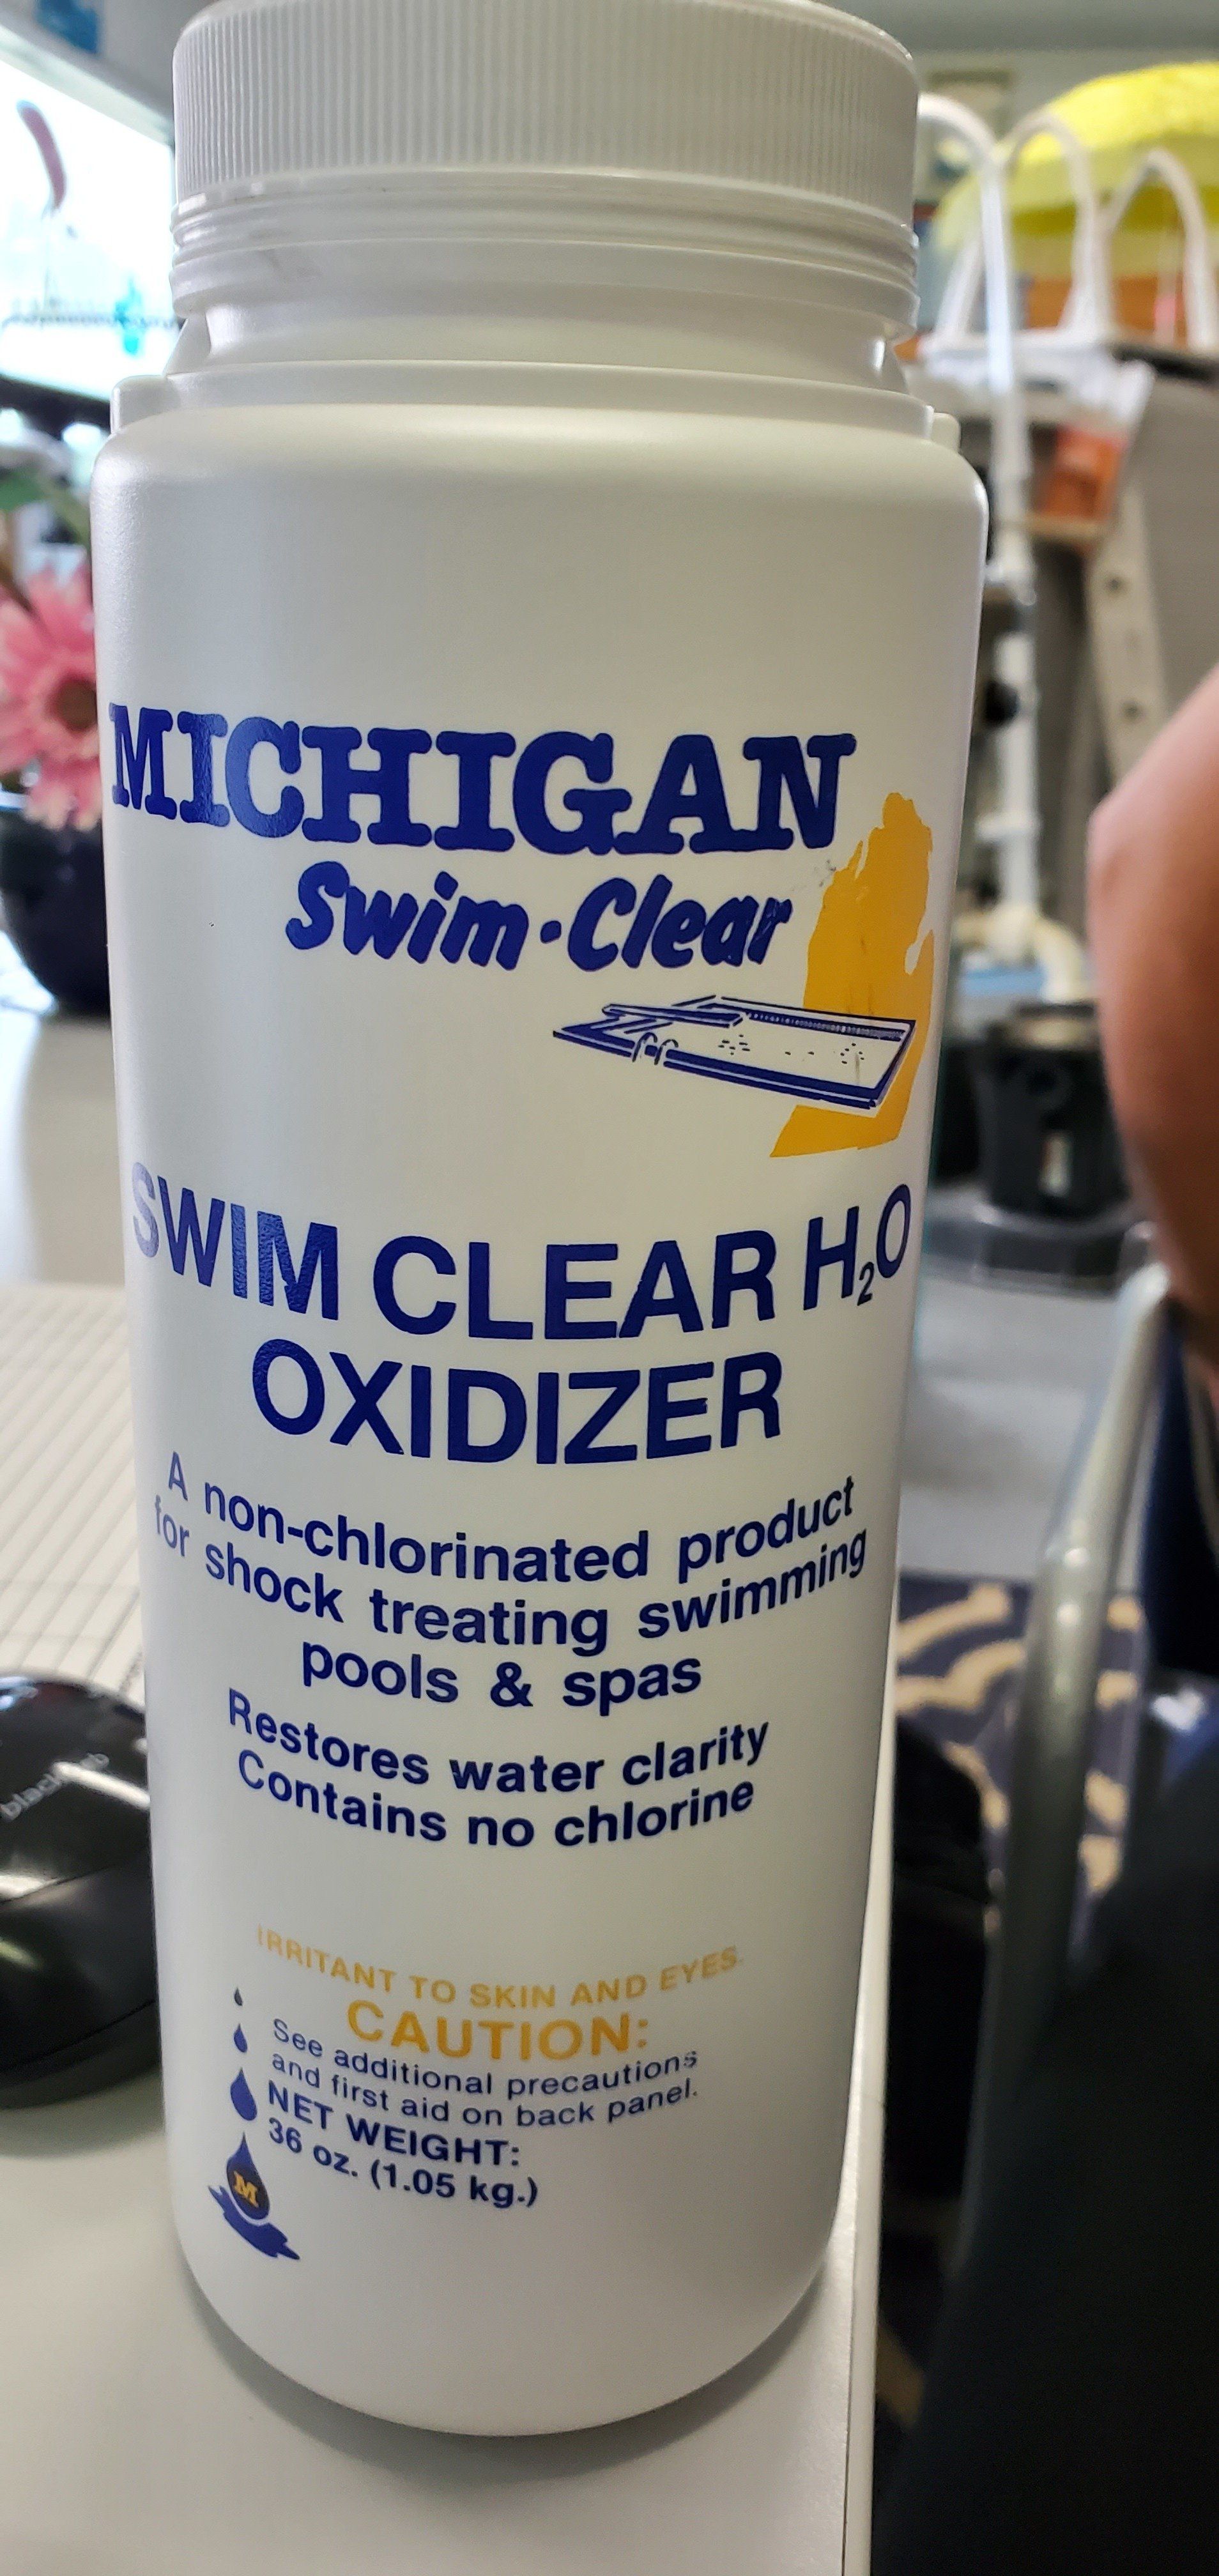 Swim Clear H2O Oxidizer — Portage, MI — Michigan Swim Pool & Spa